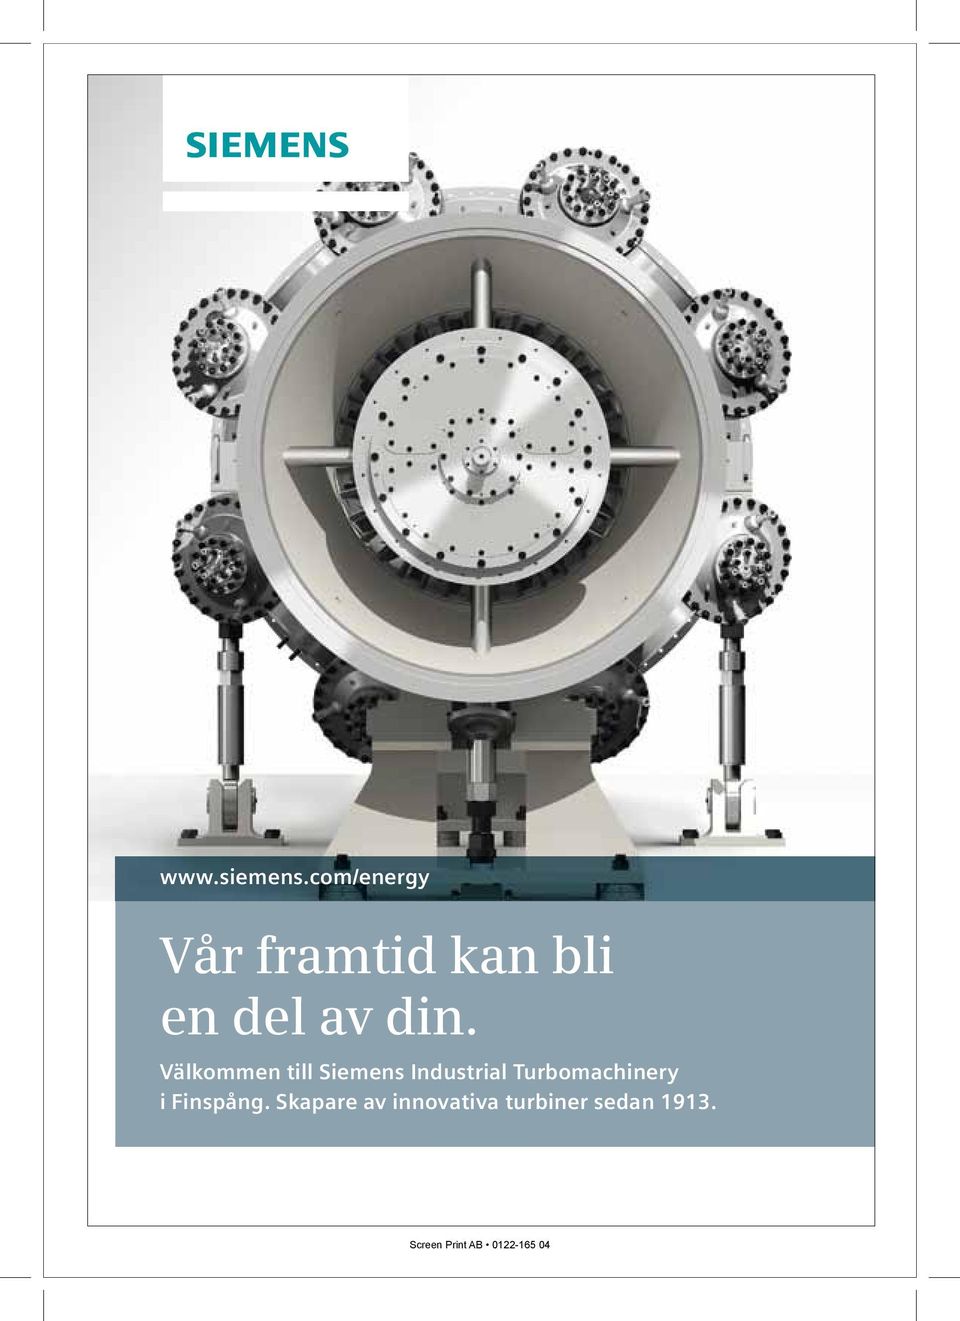 Finspång. Skapare av innovativa turbiner sedan 1913.